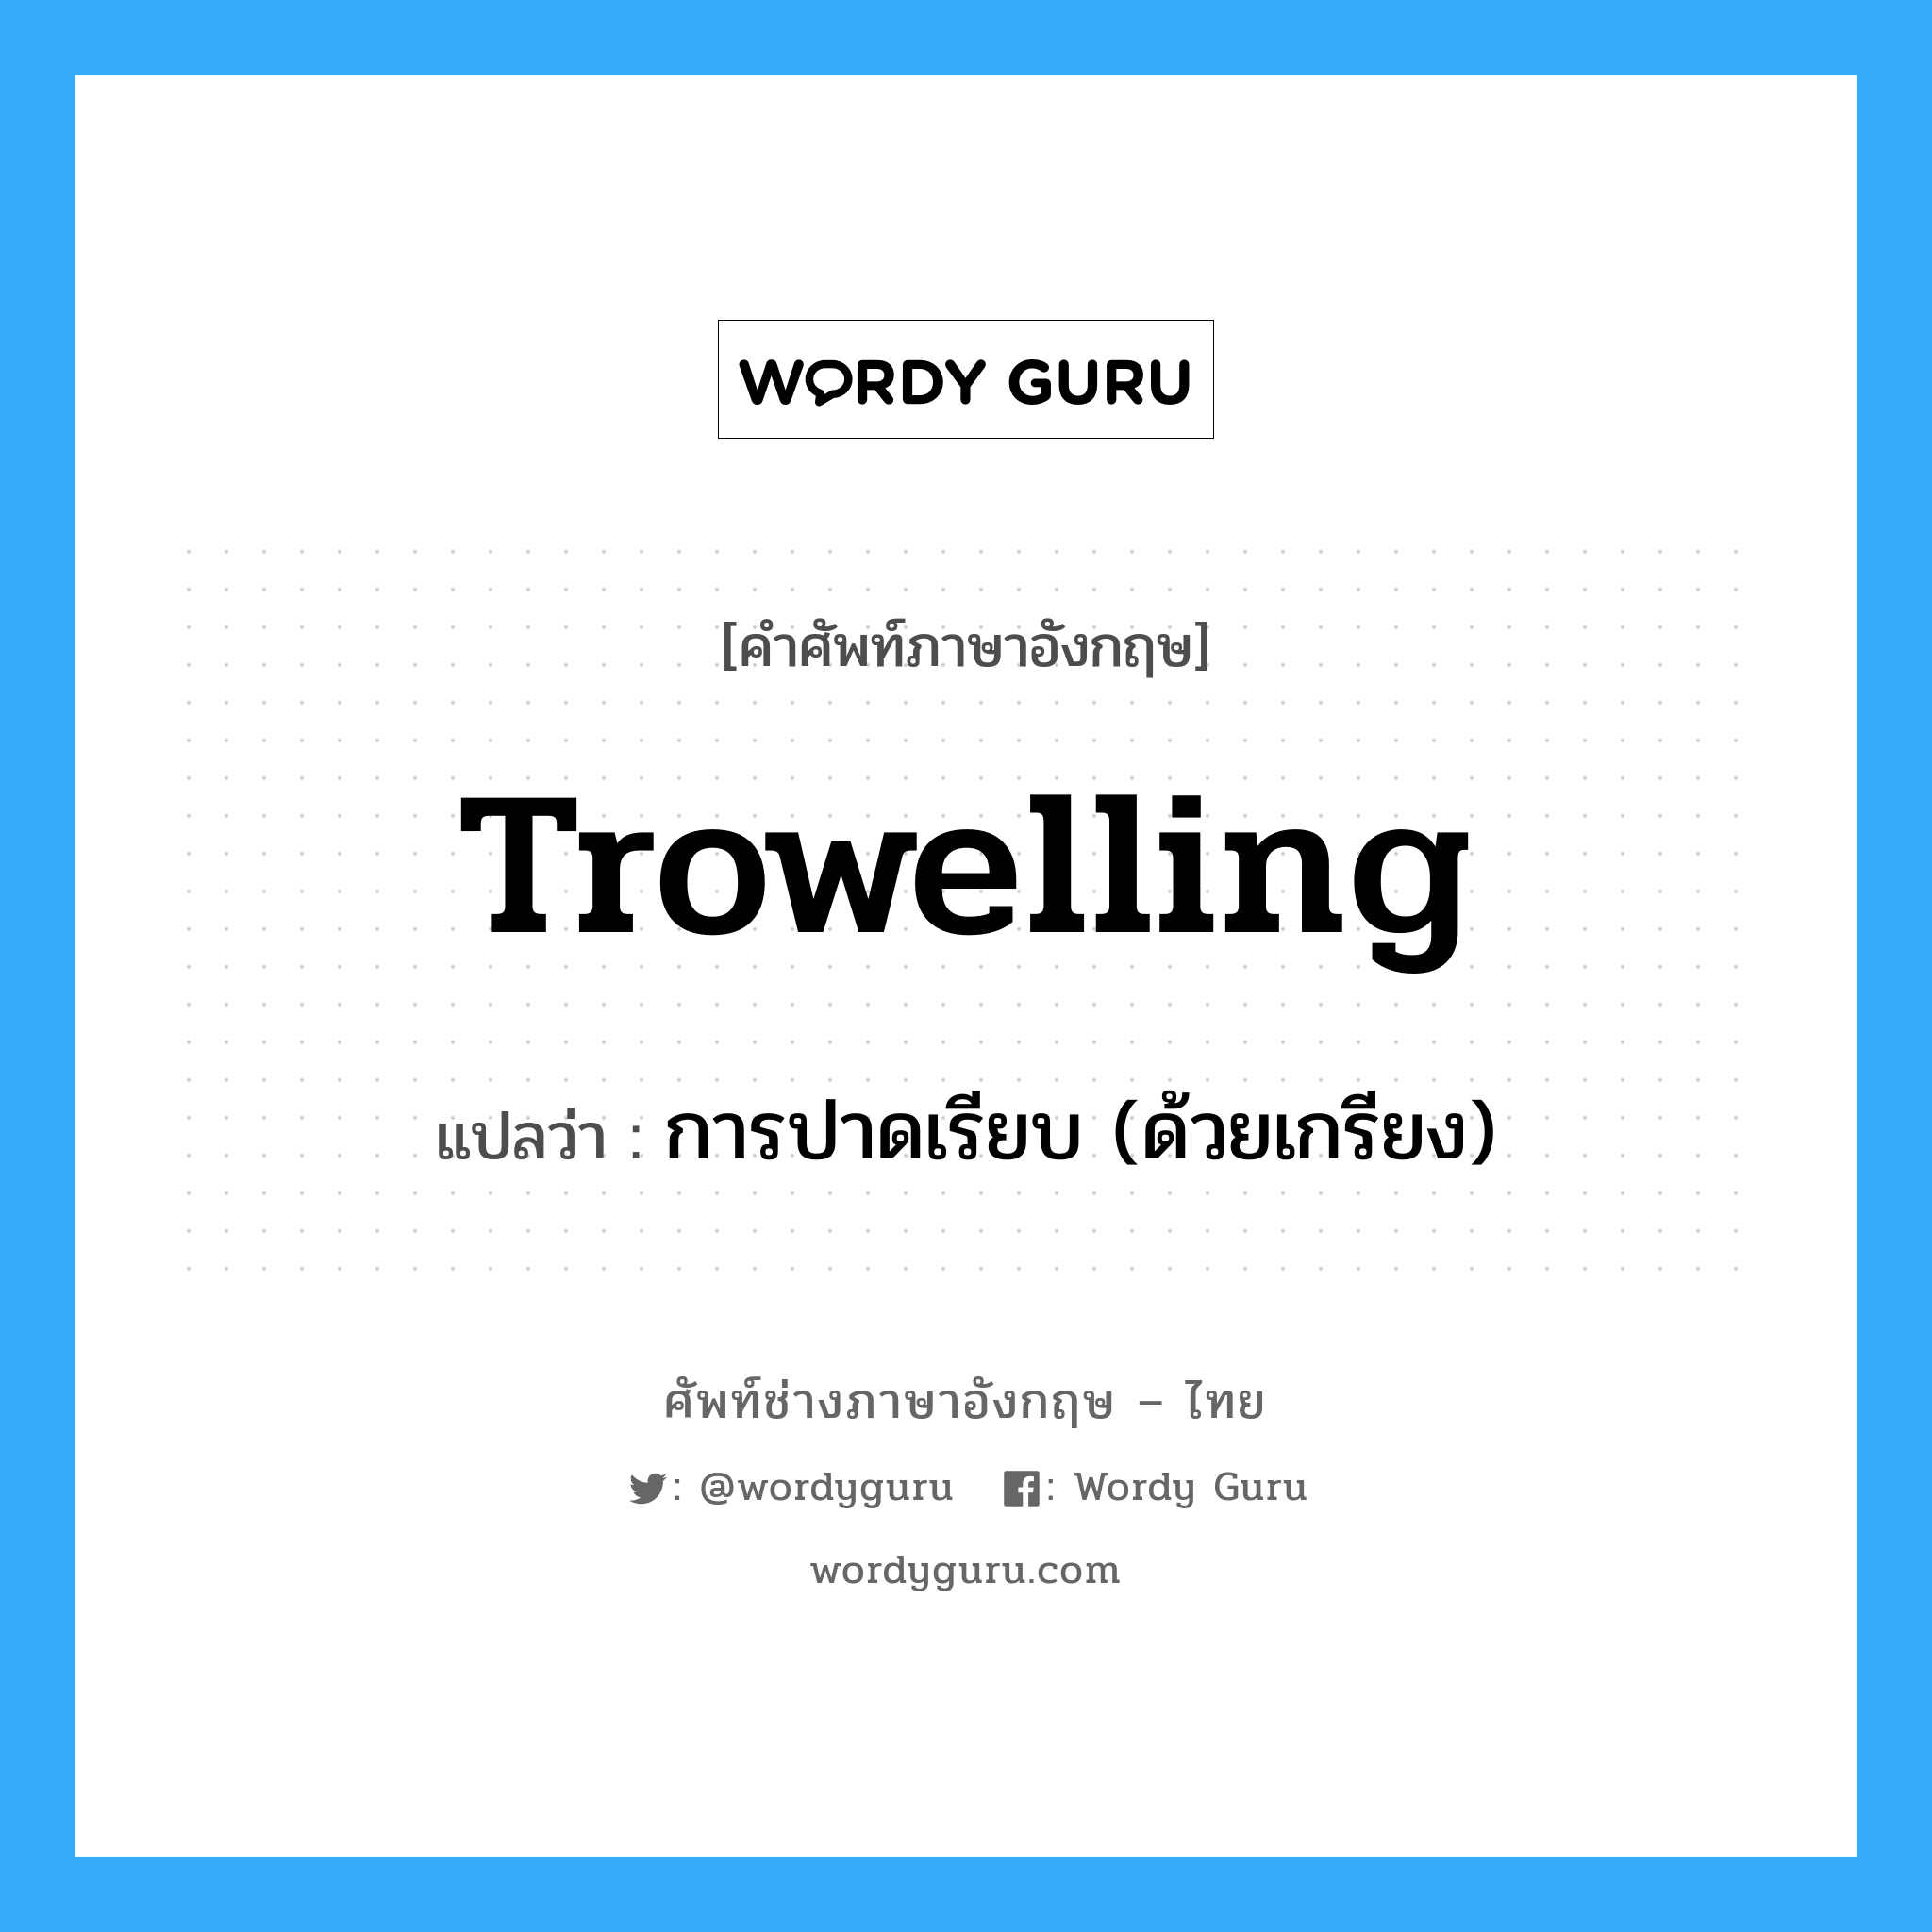 การปาดเรียบ (ด้วยเกรียง) ภาษาอังกฤษ?, คำศัพท์ช่างภาษาอังกฤษ - ไทย การปาดเรียบ (ด้วยเกรียง) คำศัพท์ภาษาอังกฤษ การปาดเรียบ (ด้วยเกรียง) แปลว่า trowelling